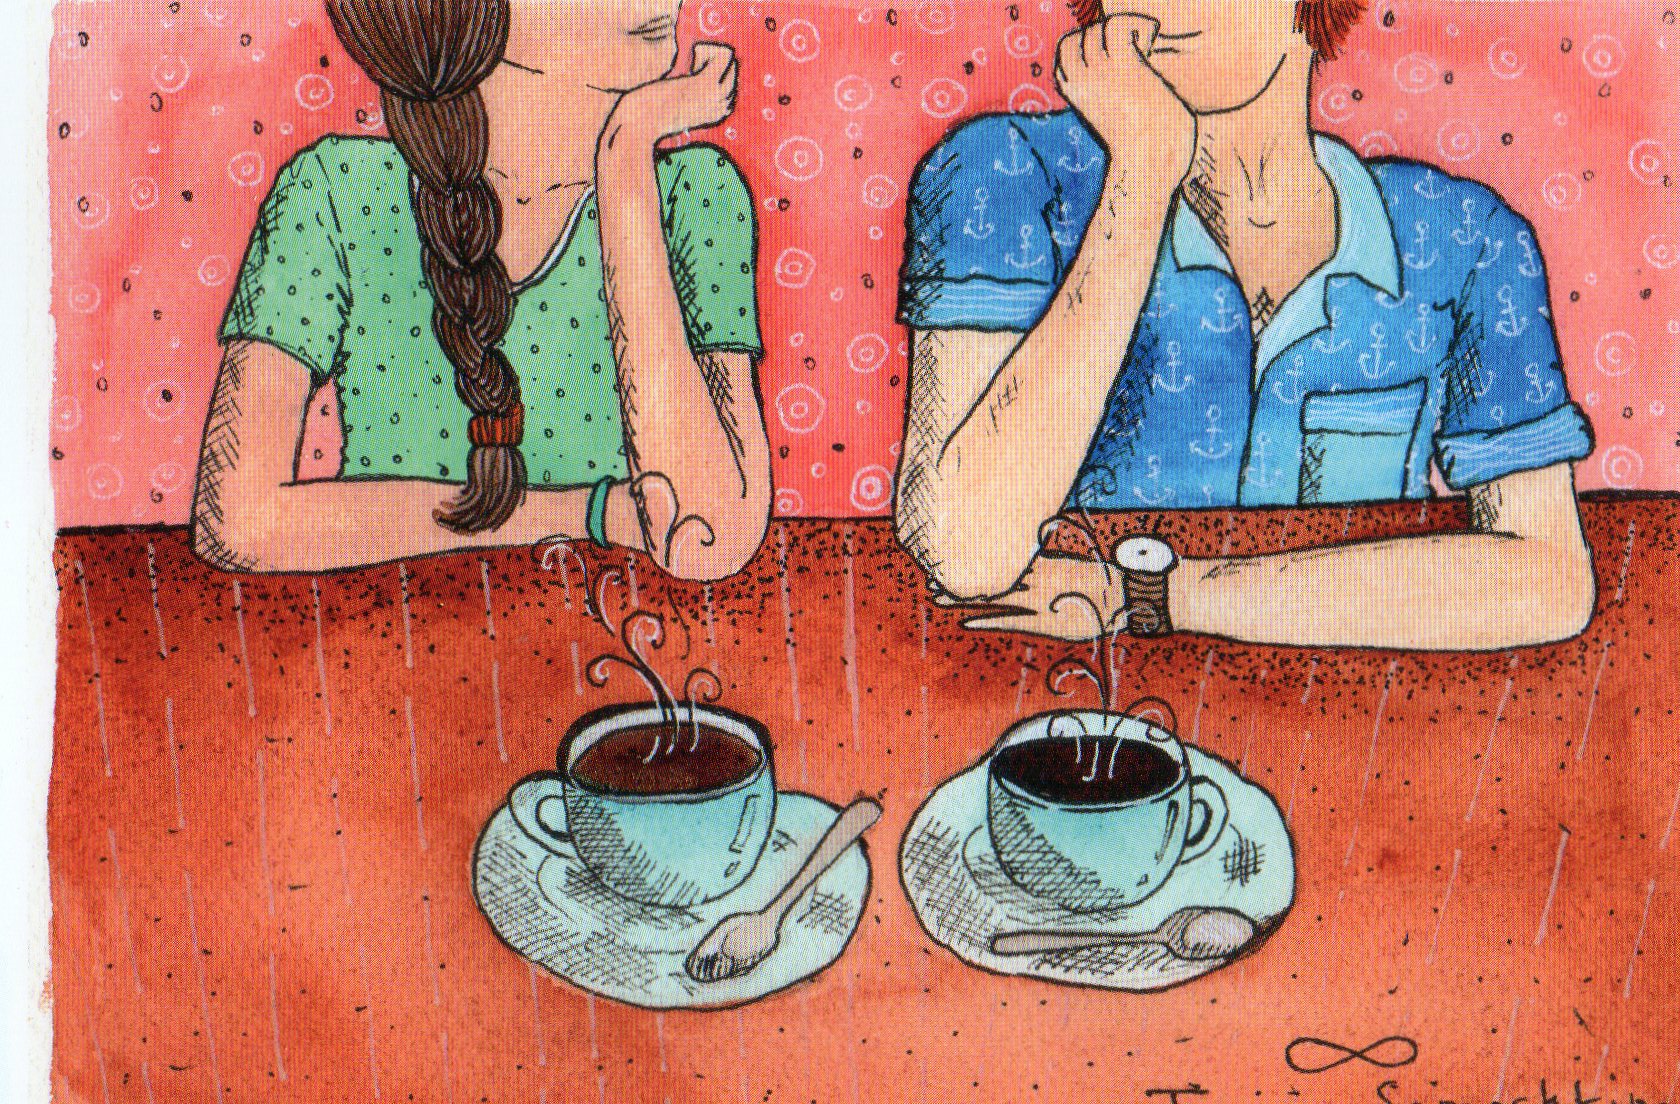 Рисунки беседа за чаем